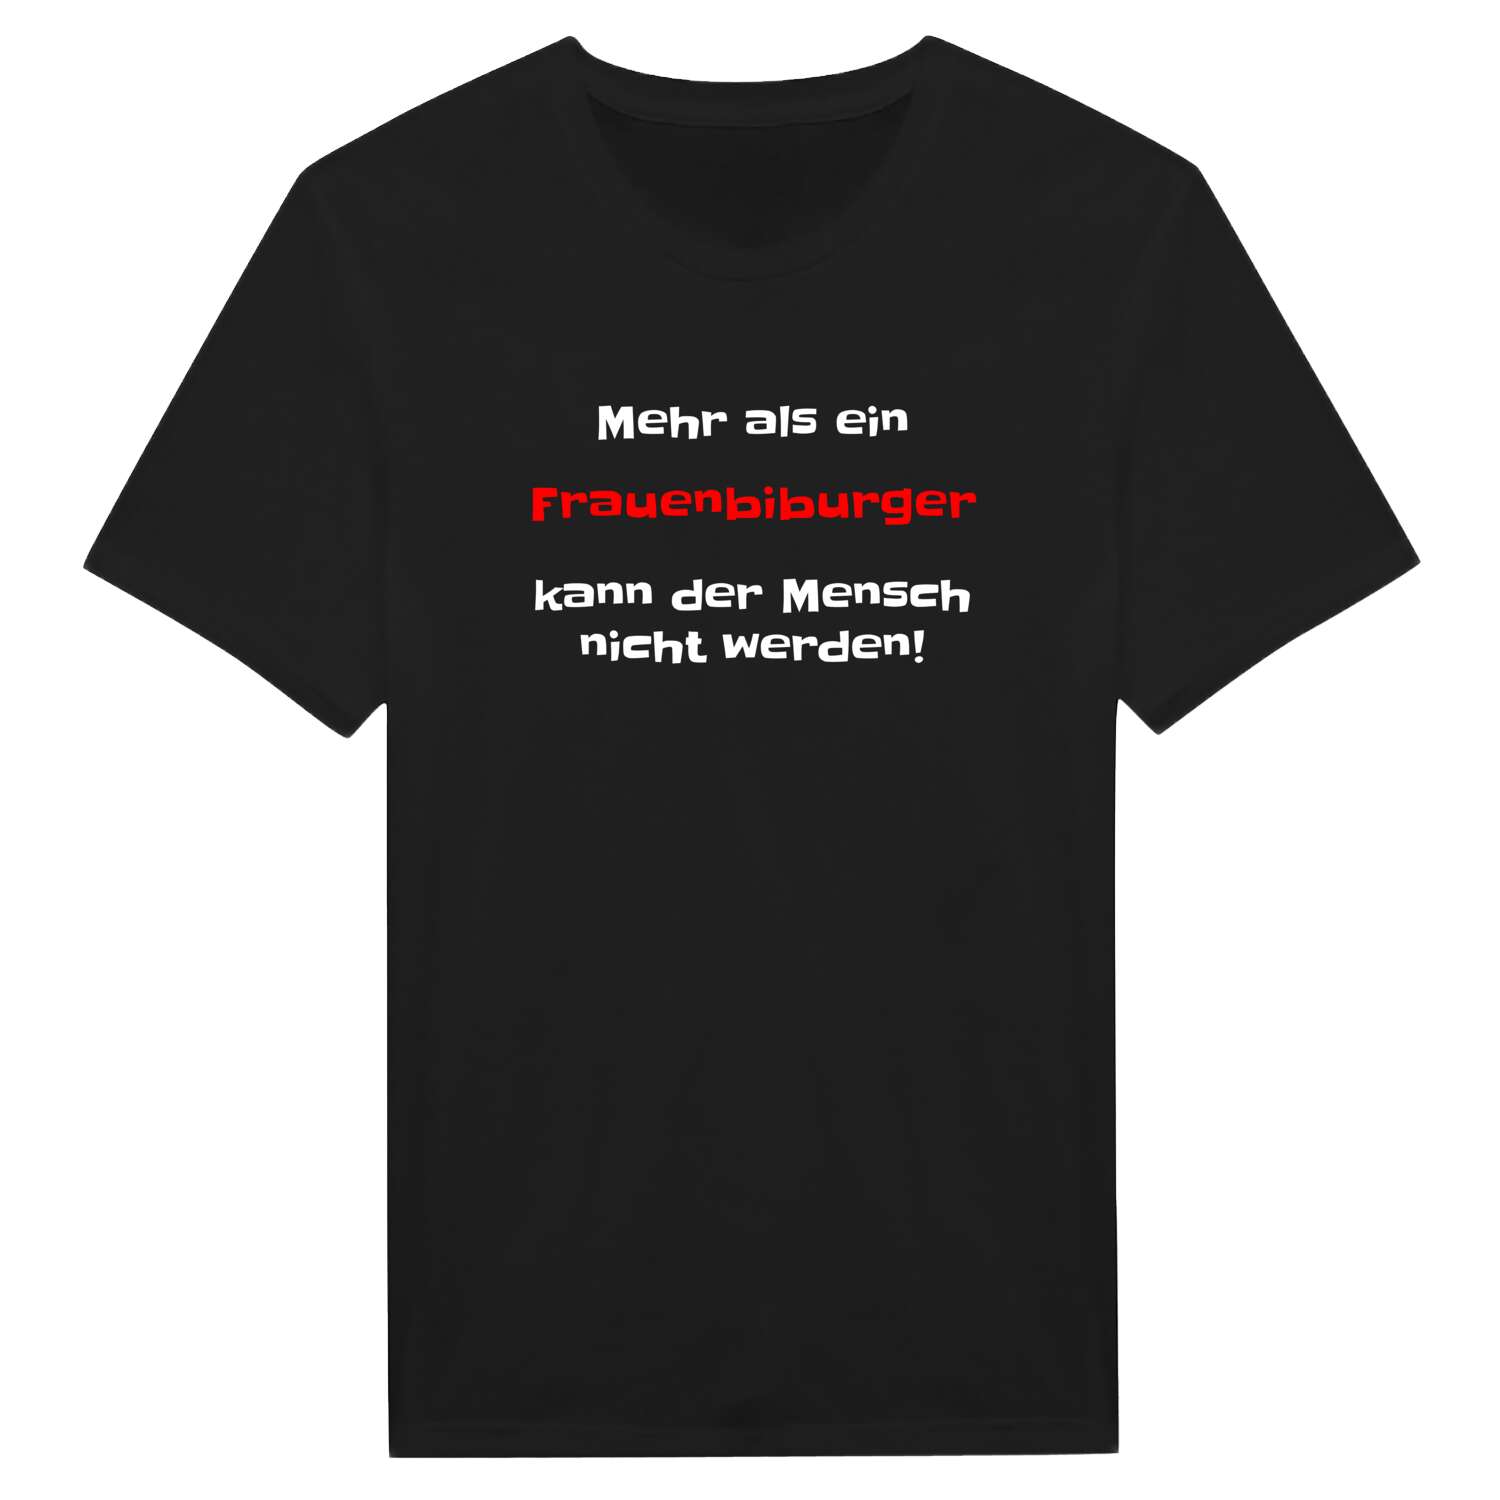 Frauenbiburg T-Shirt »Mehr als ein«